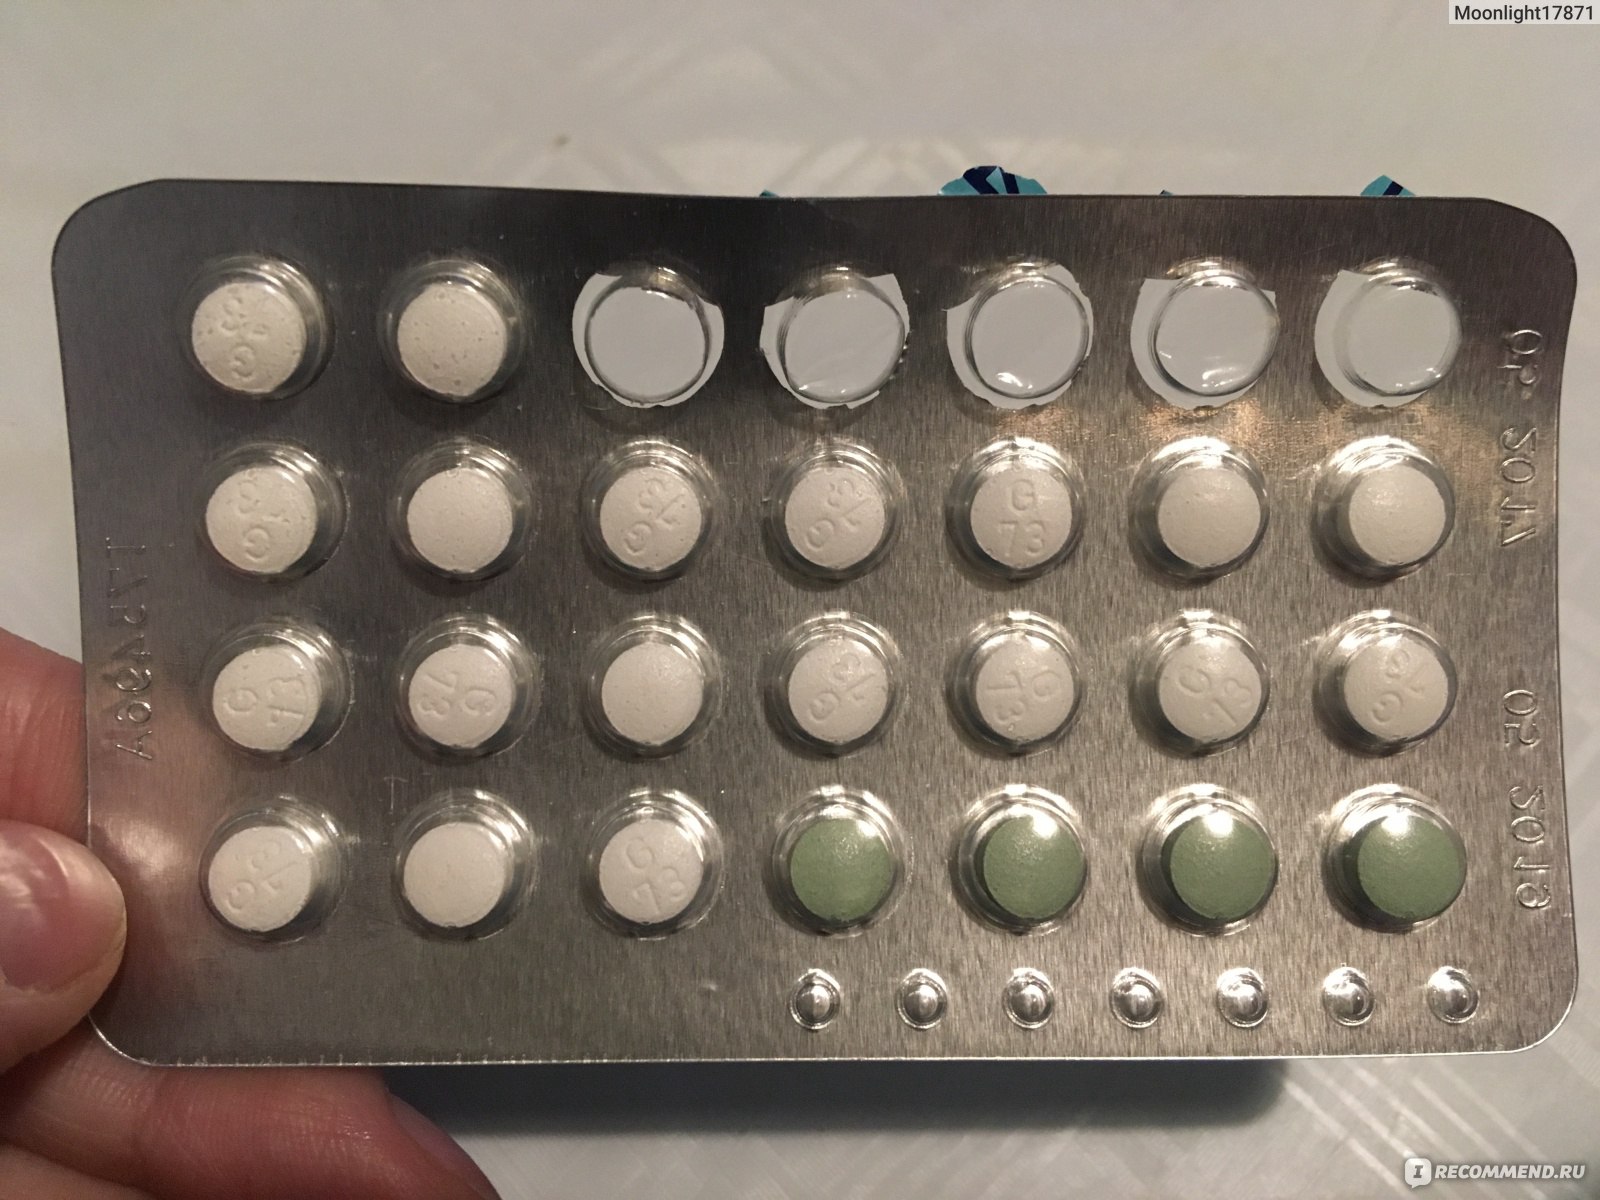 белые таблетки активные, а зеленые - пустышки (плацебо)